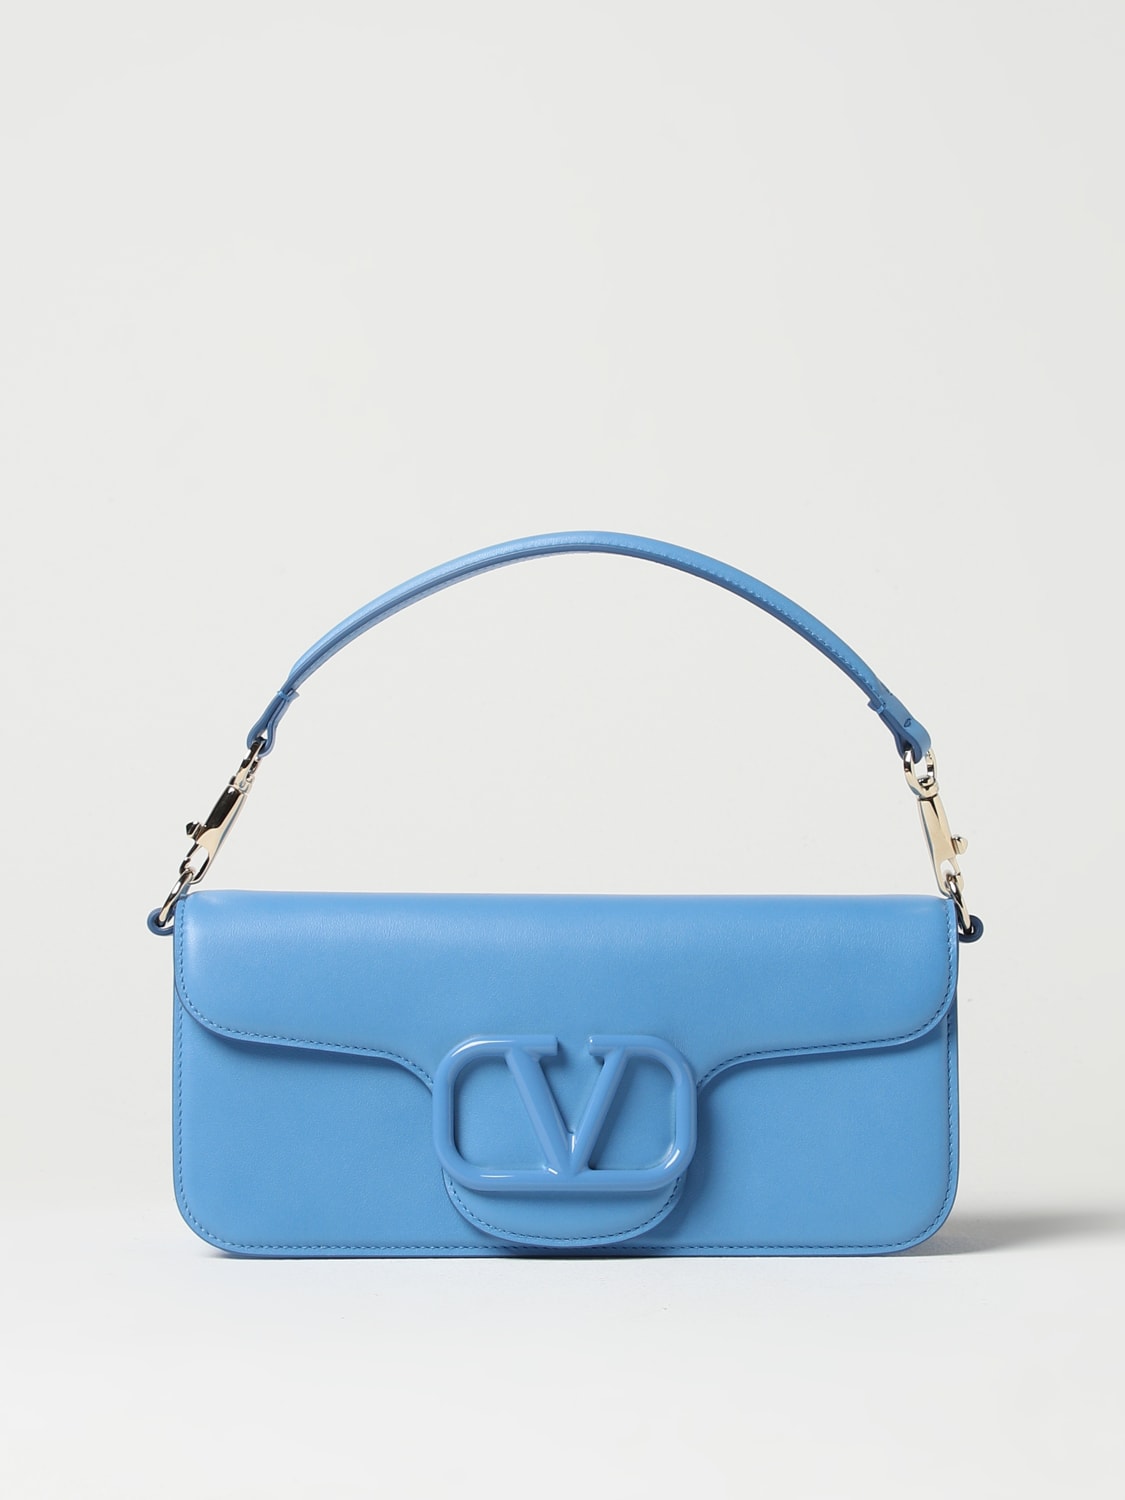 medium VSLING shoulder bag, Valentino Garavani